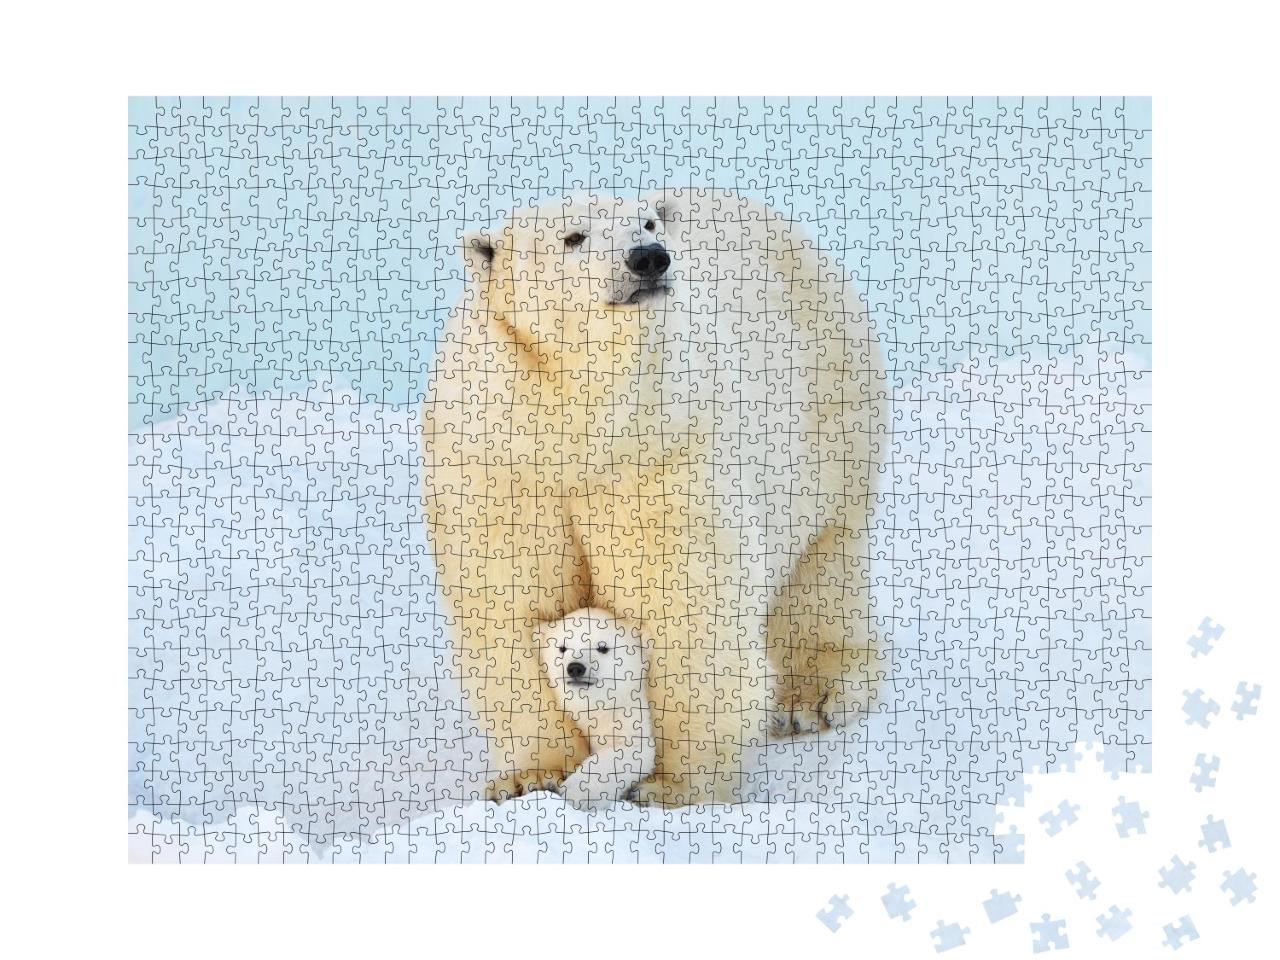 Puzzle de 1000 pièces « Un ours polaire avec un petit ourson dans la neige »